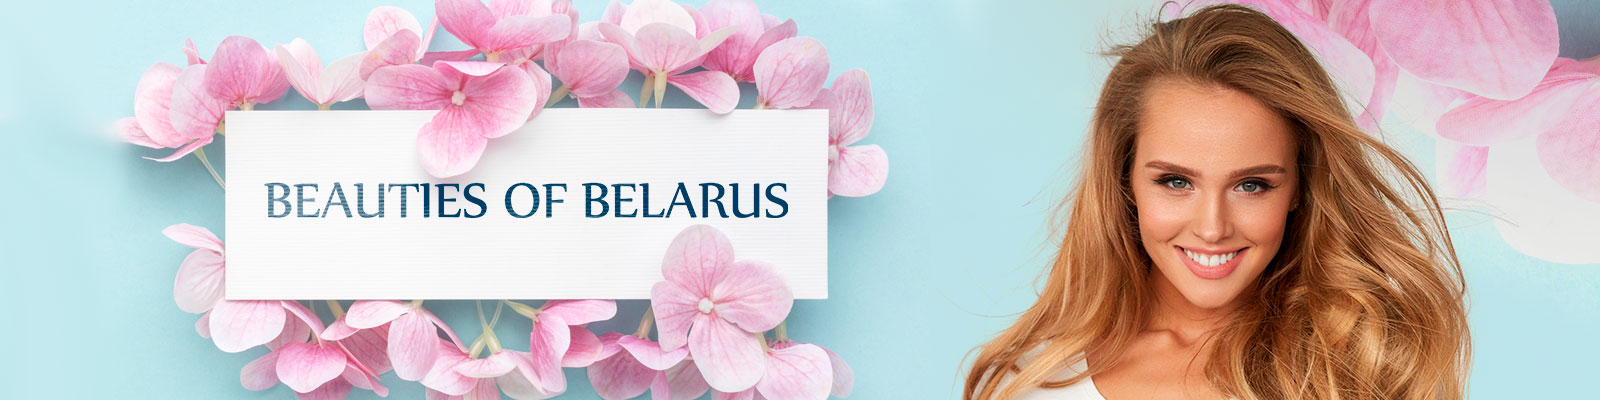 Beauties of Belarus